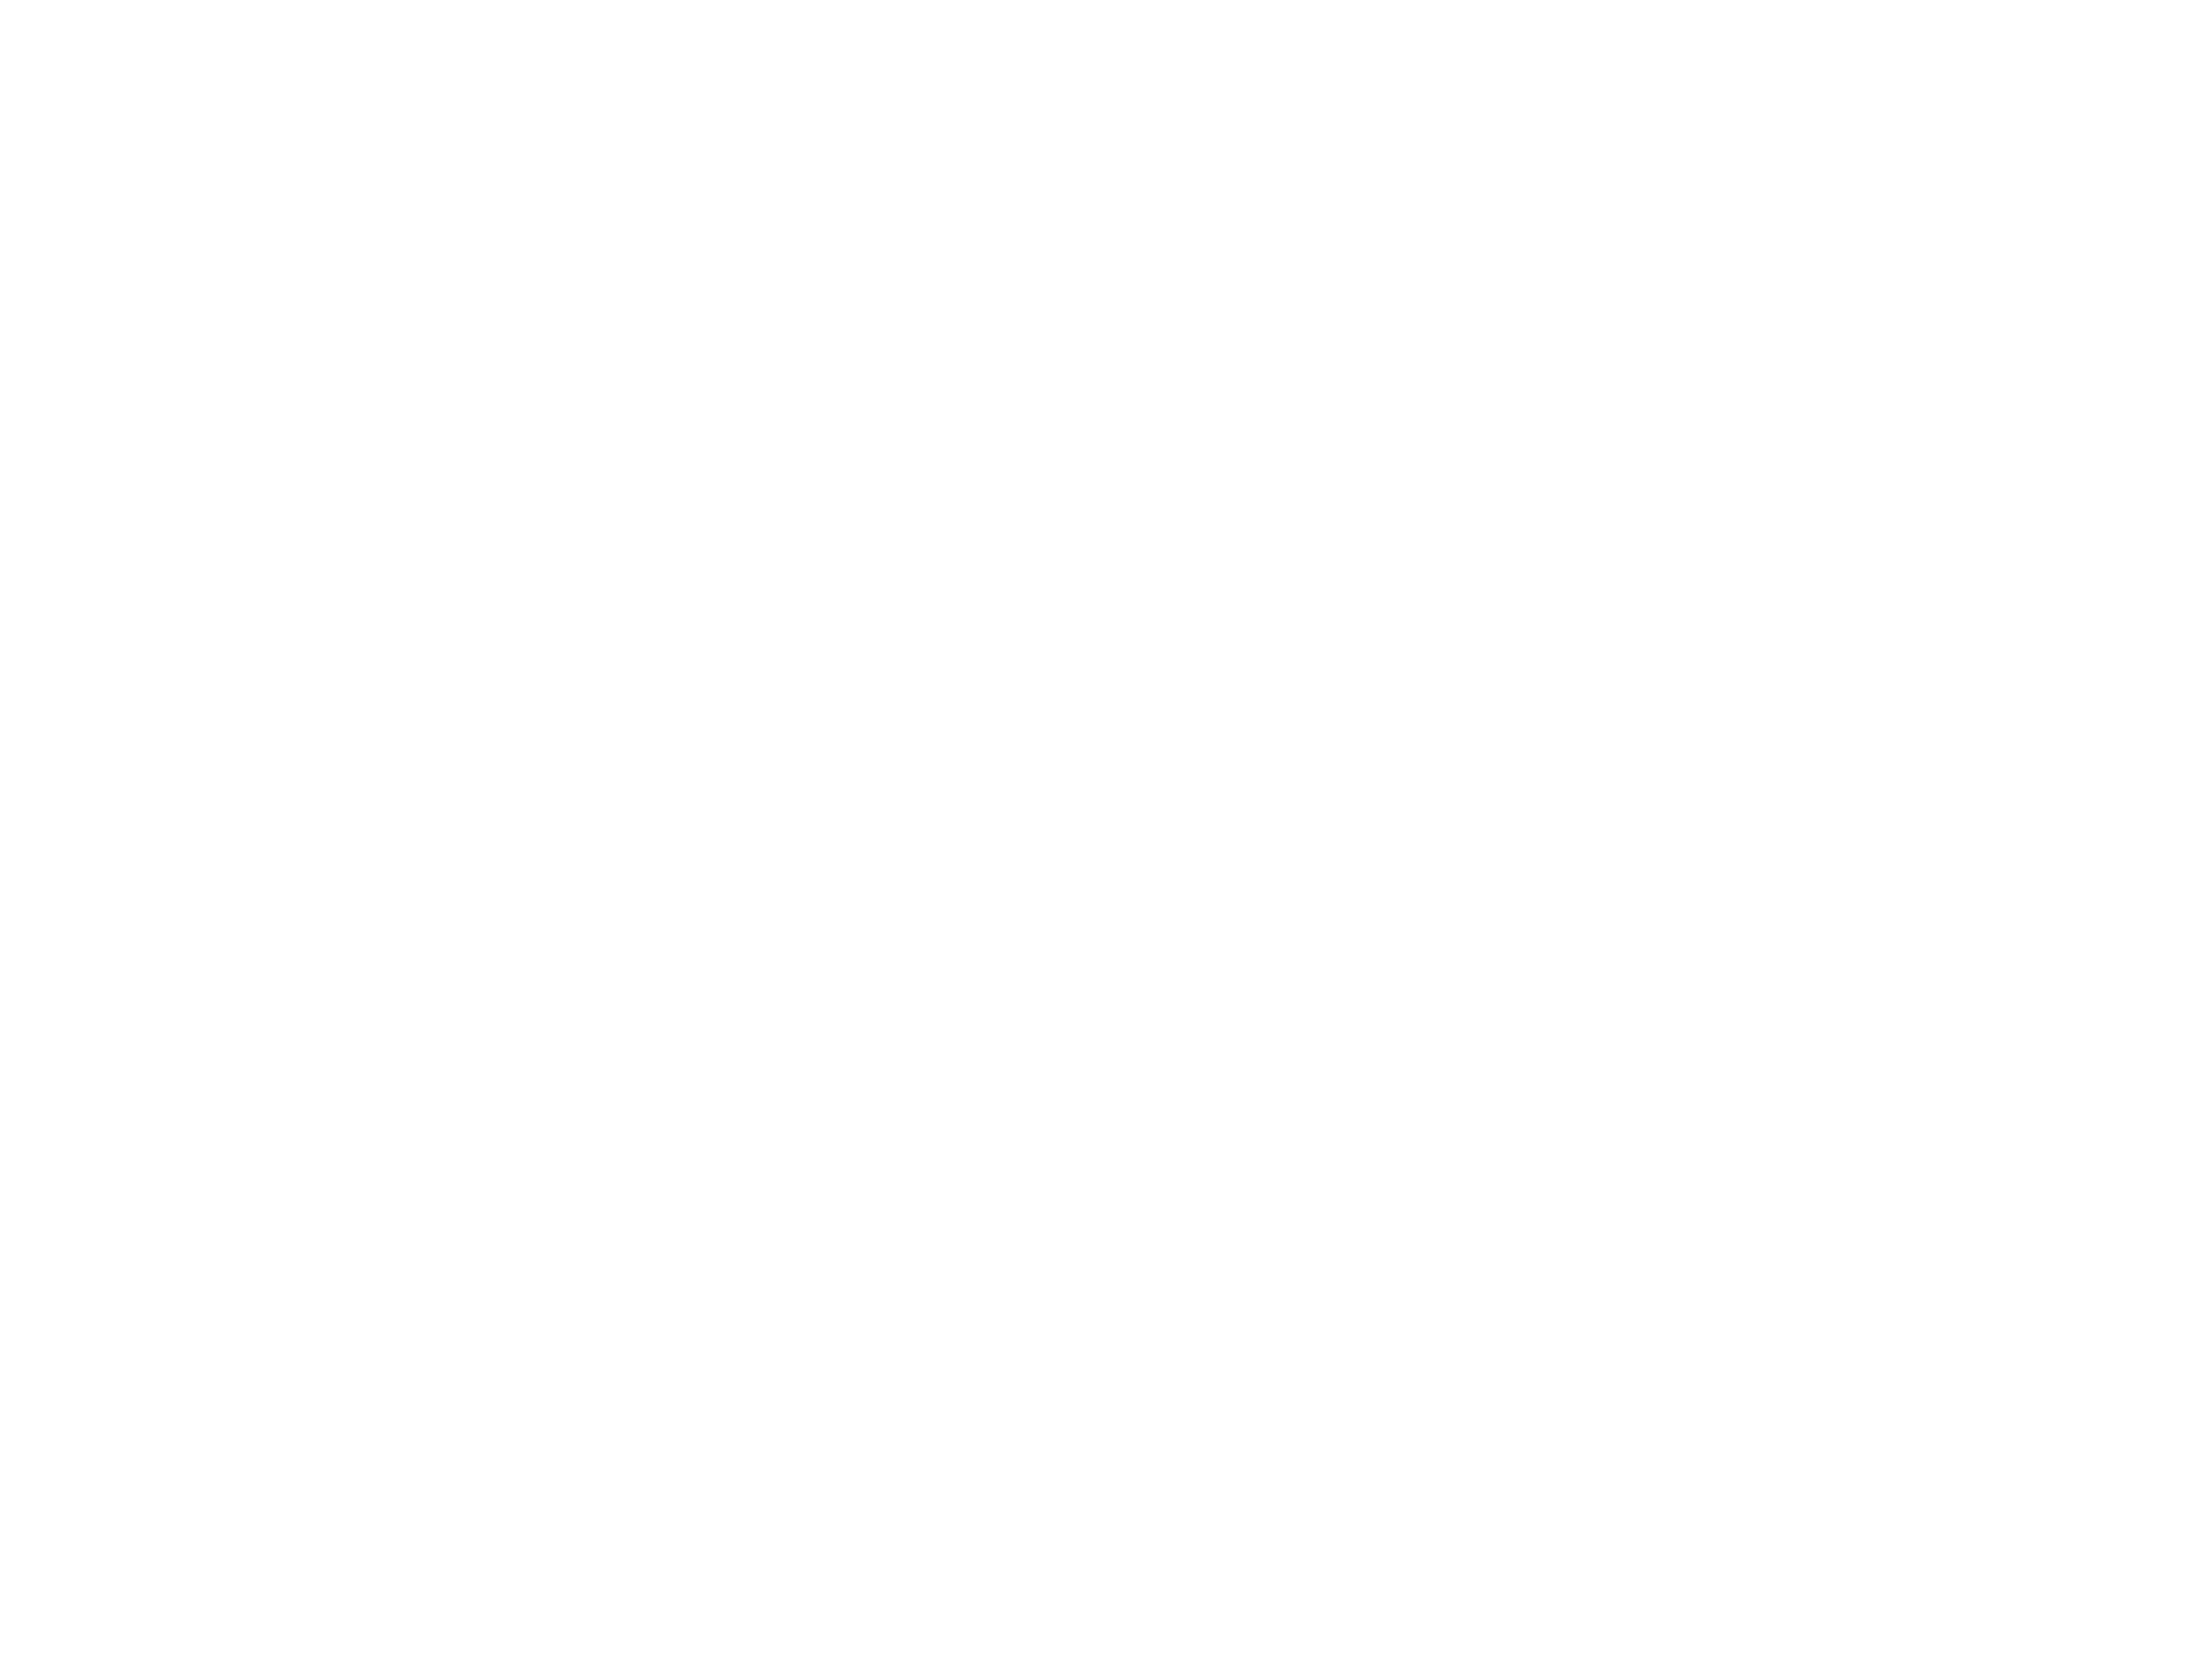 Microflow